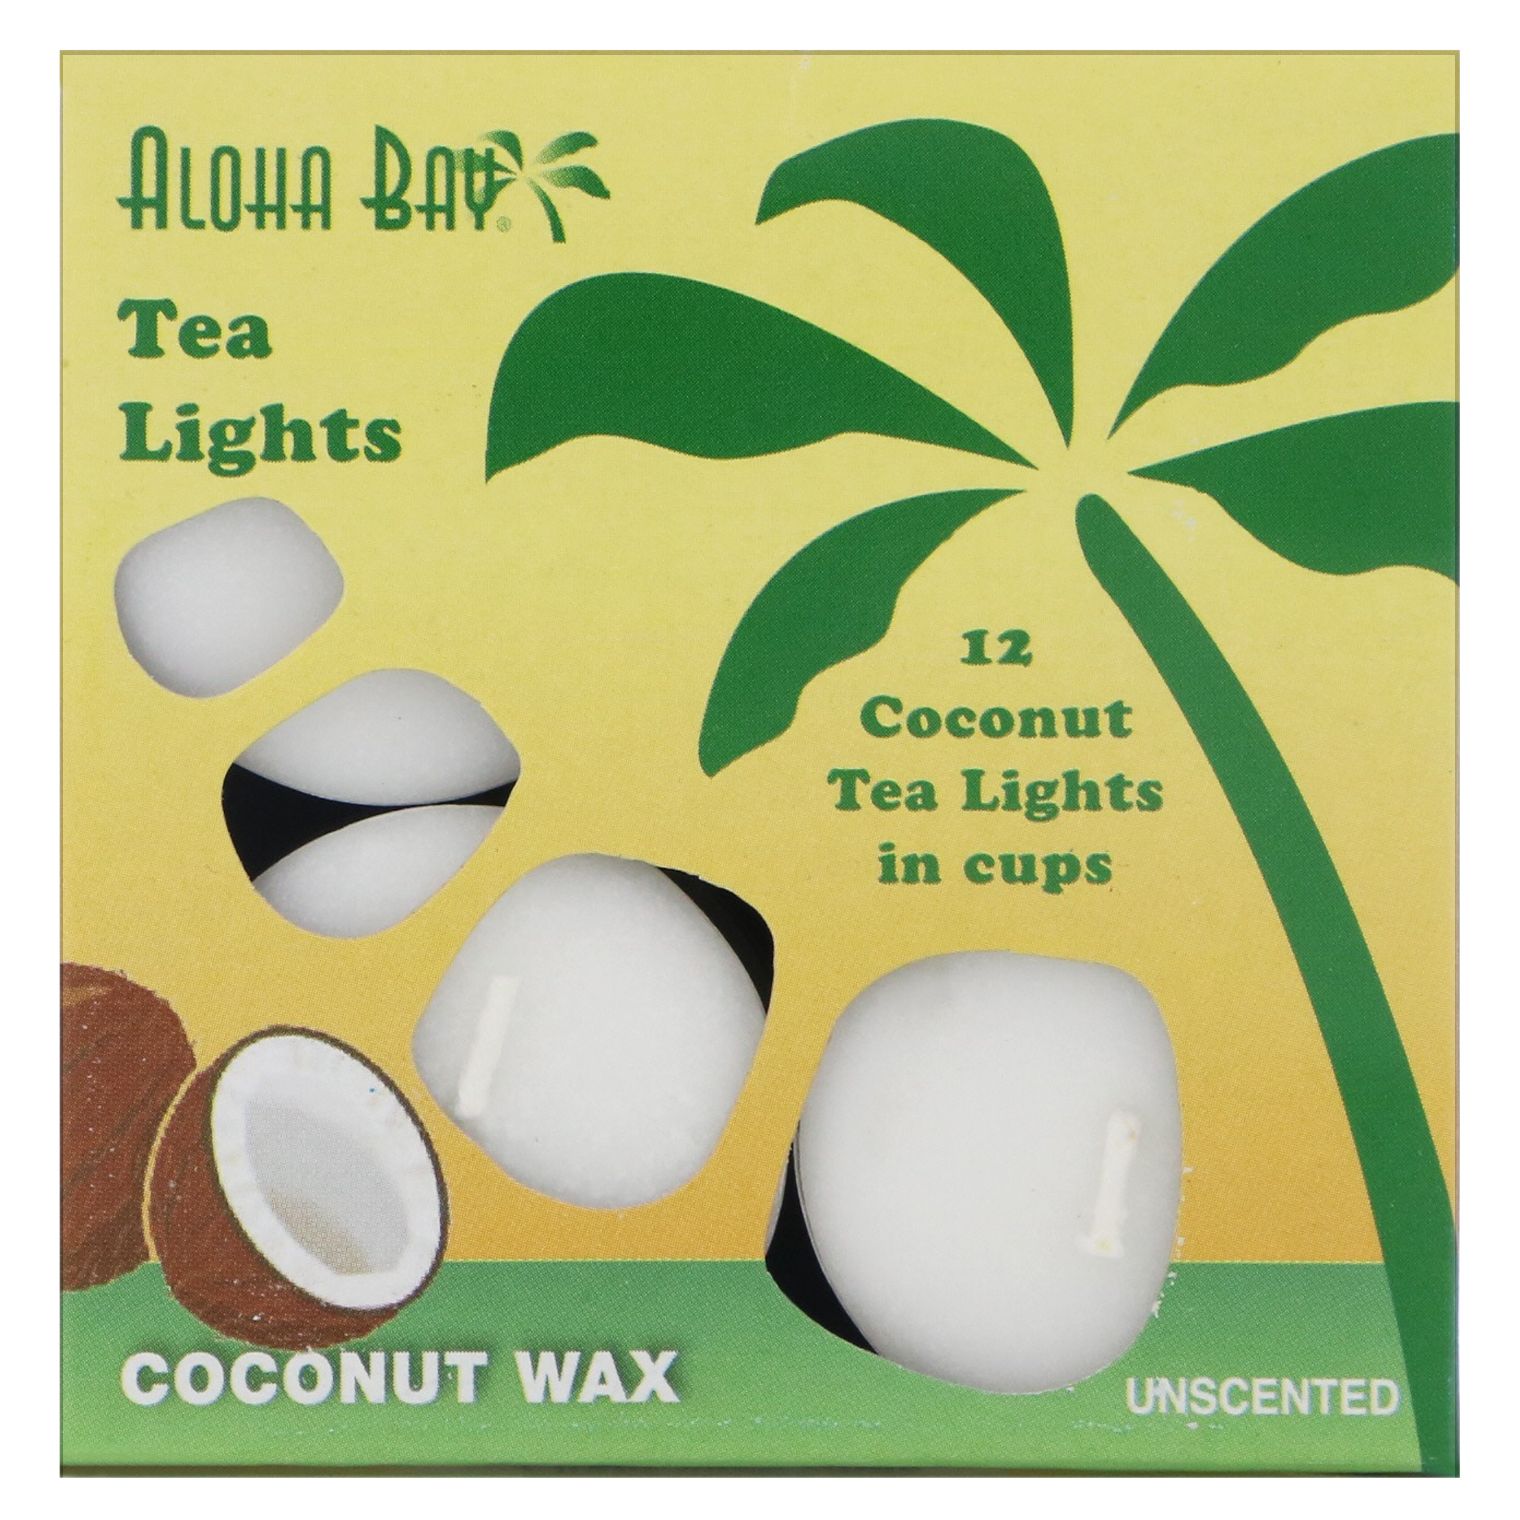 Aloha Bay Восковые кокосовые свечи чайные огоньки без запаха белые 12 шт. aloha bay гималайская поваренная и столовая соль мелкие кристаллы 170 г 6 унций